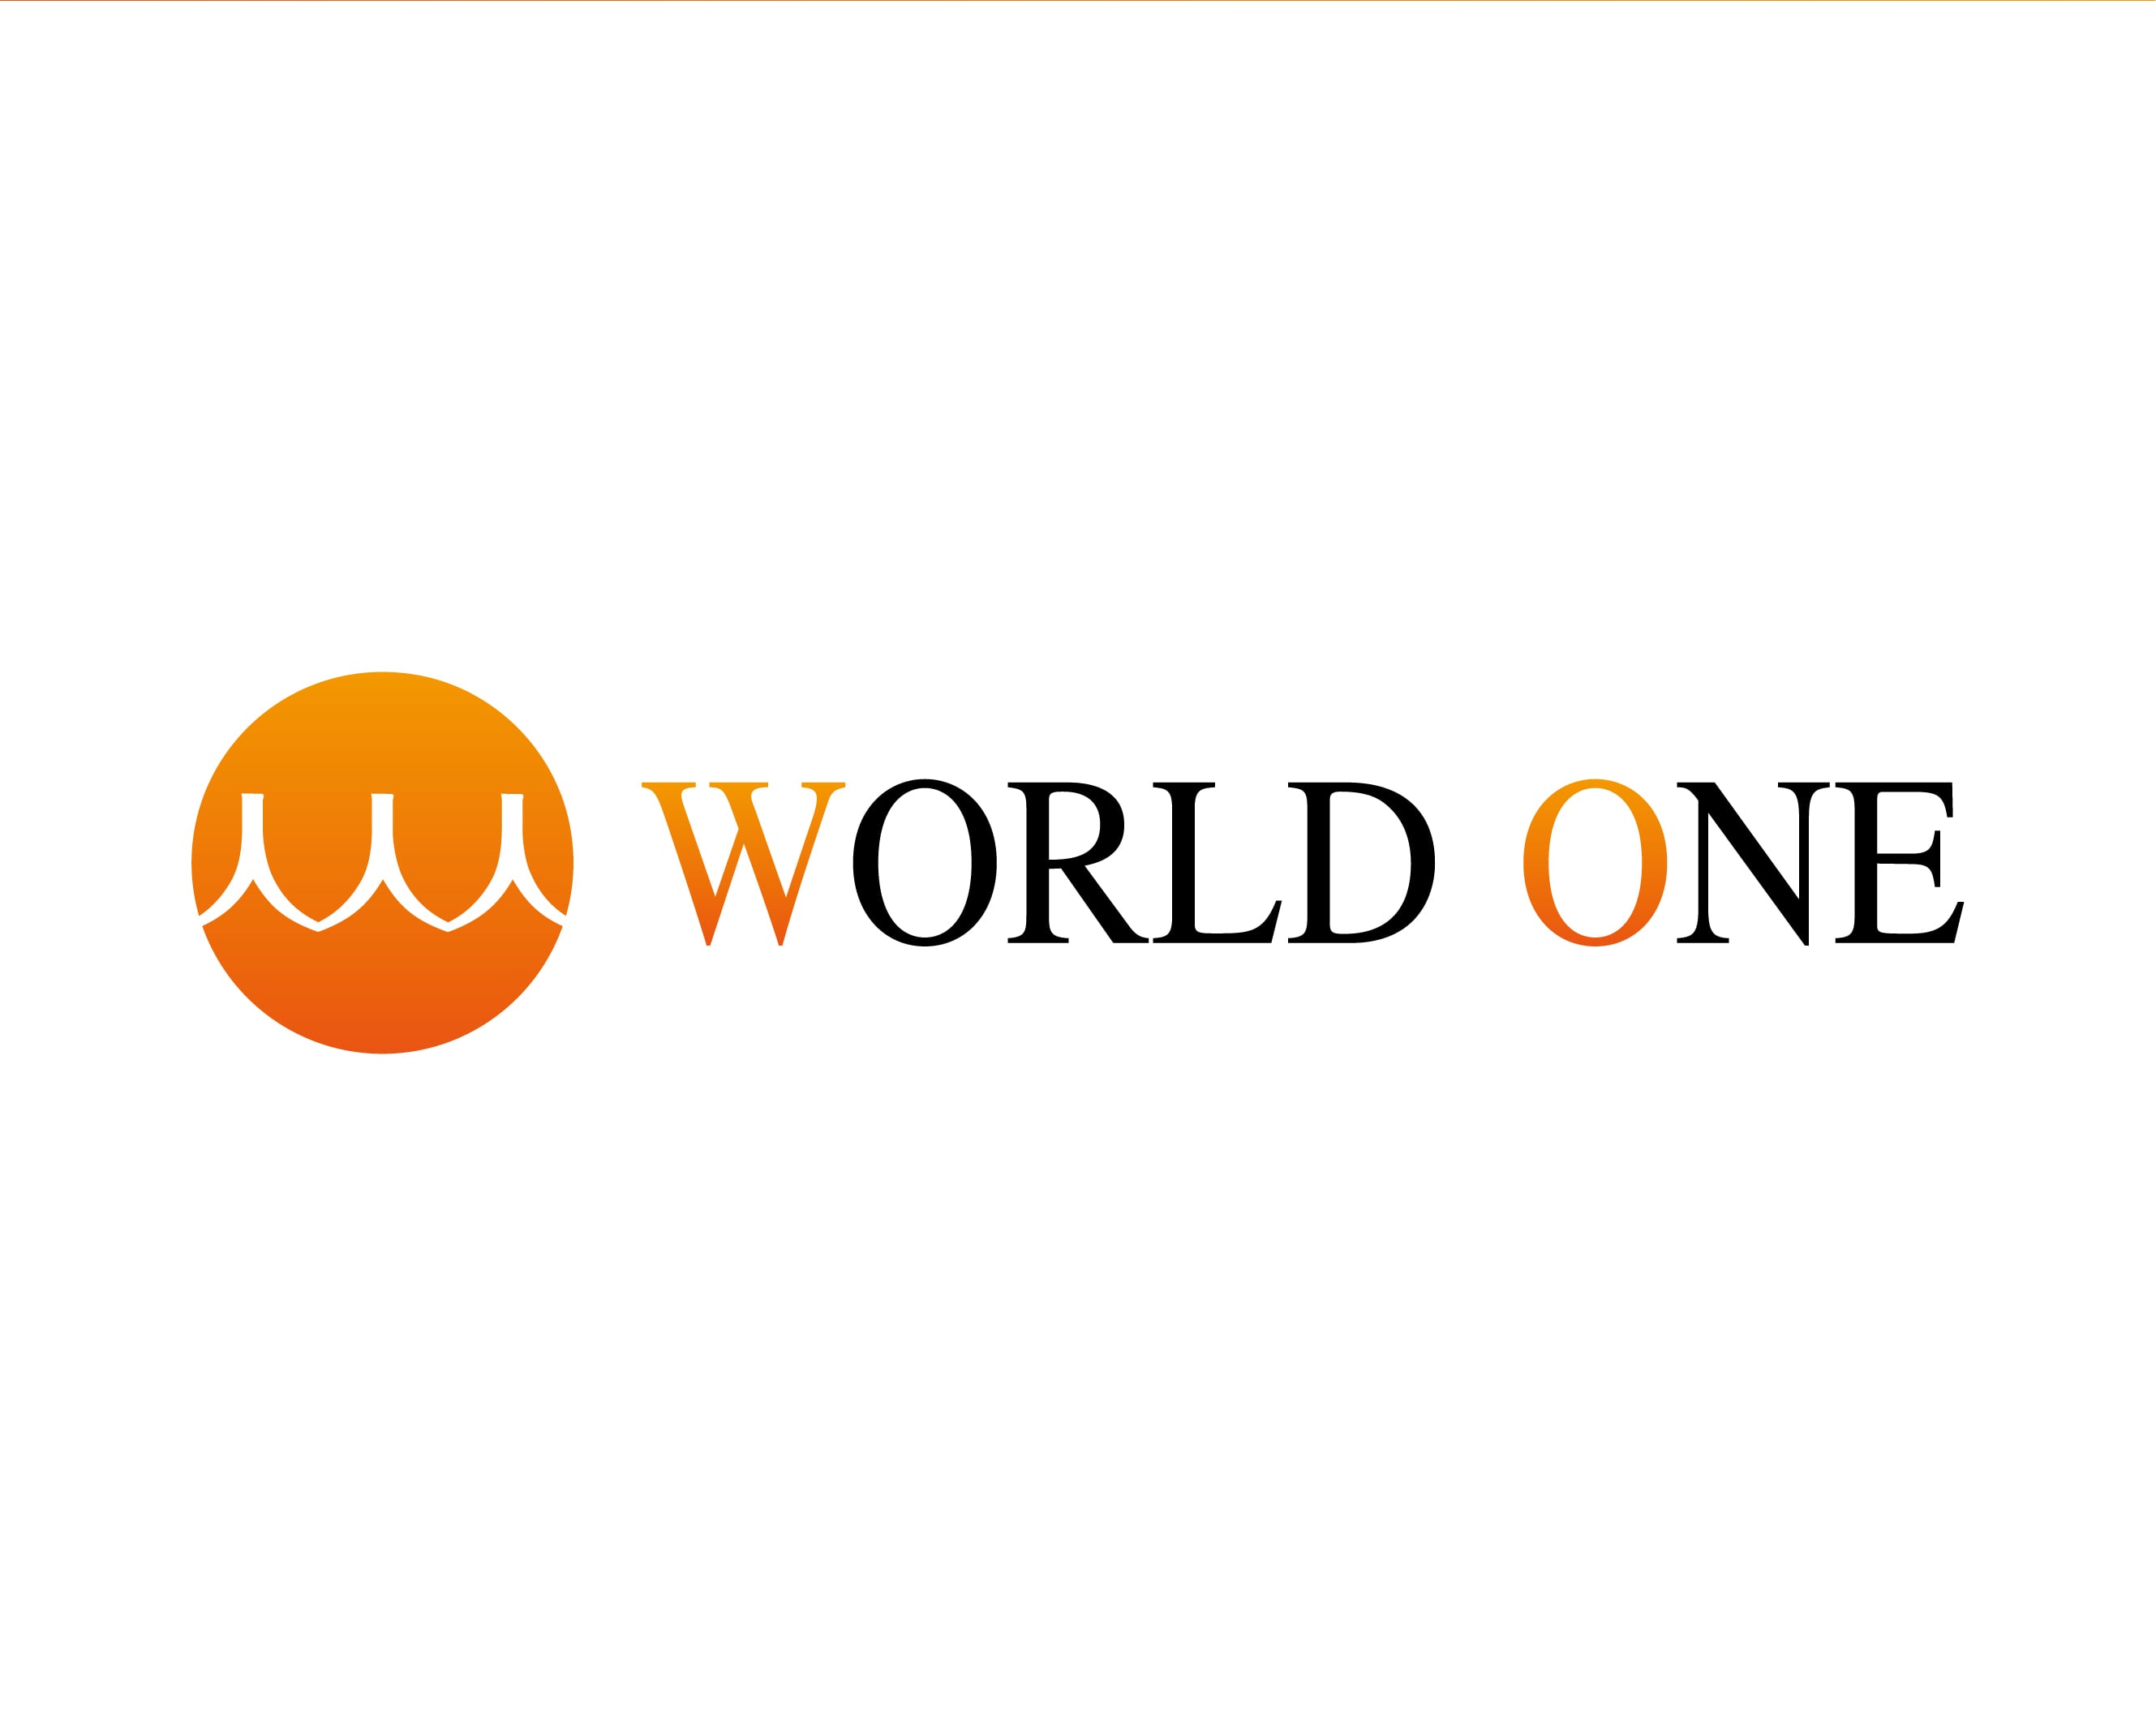 WORLD ONE（ワールド・ワン）